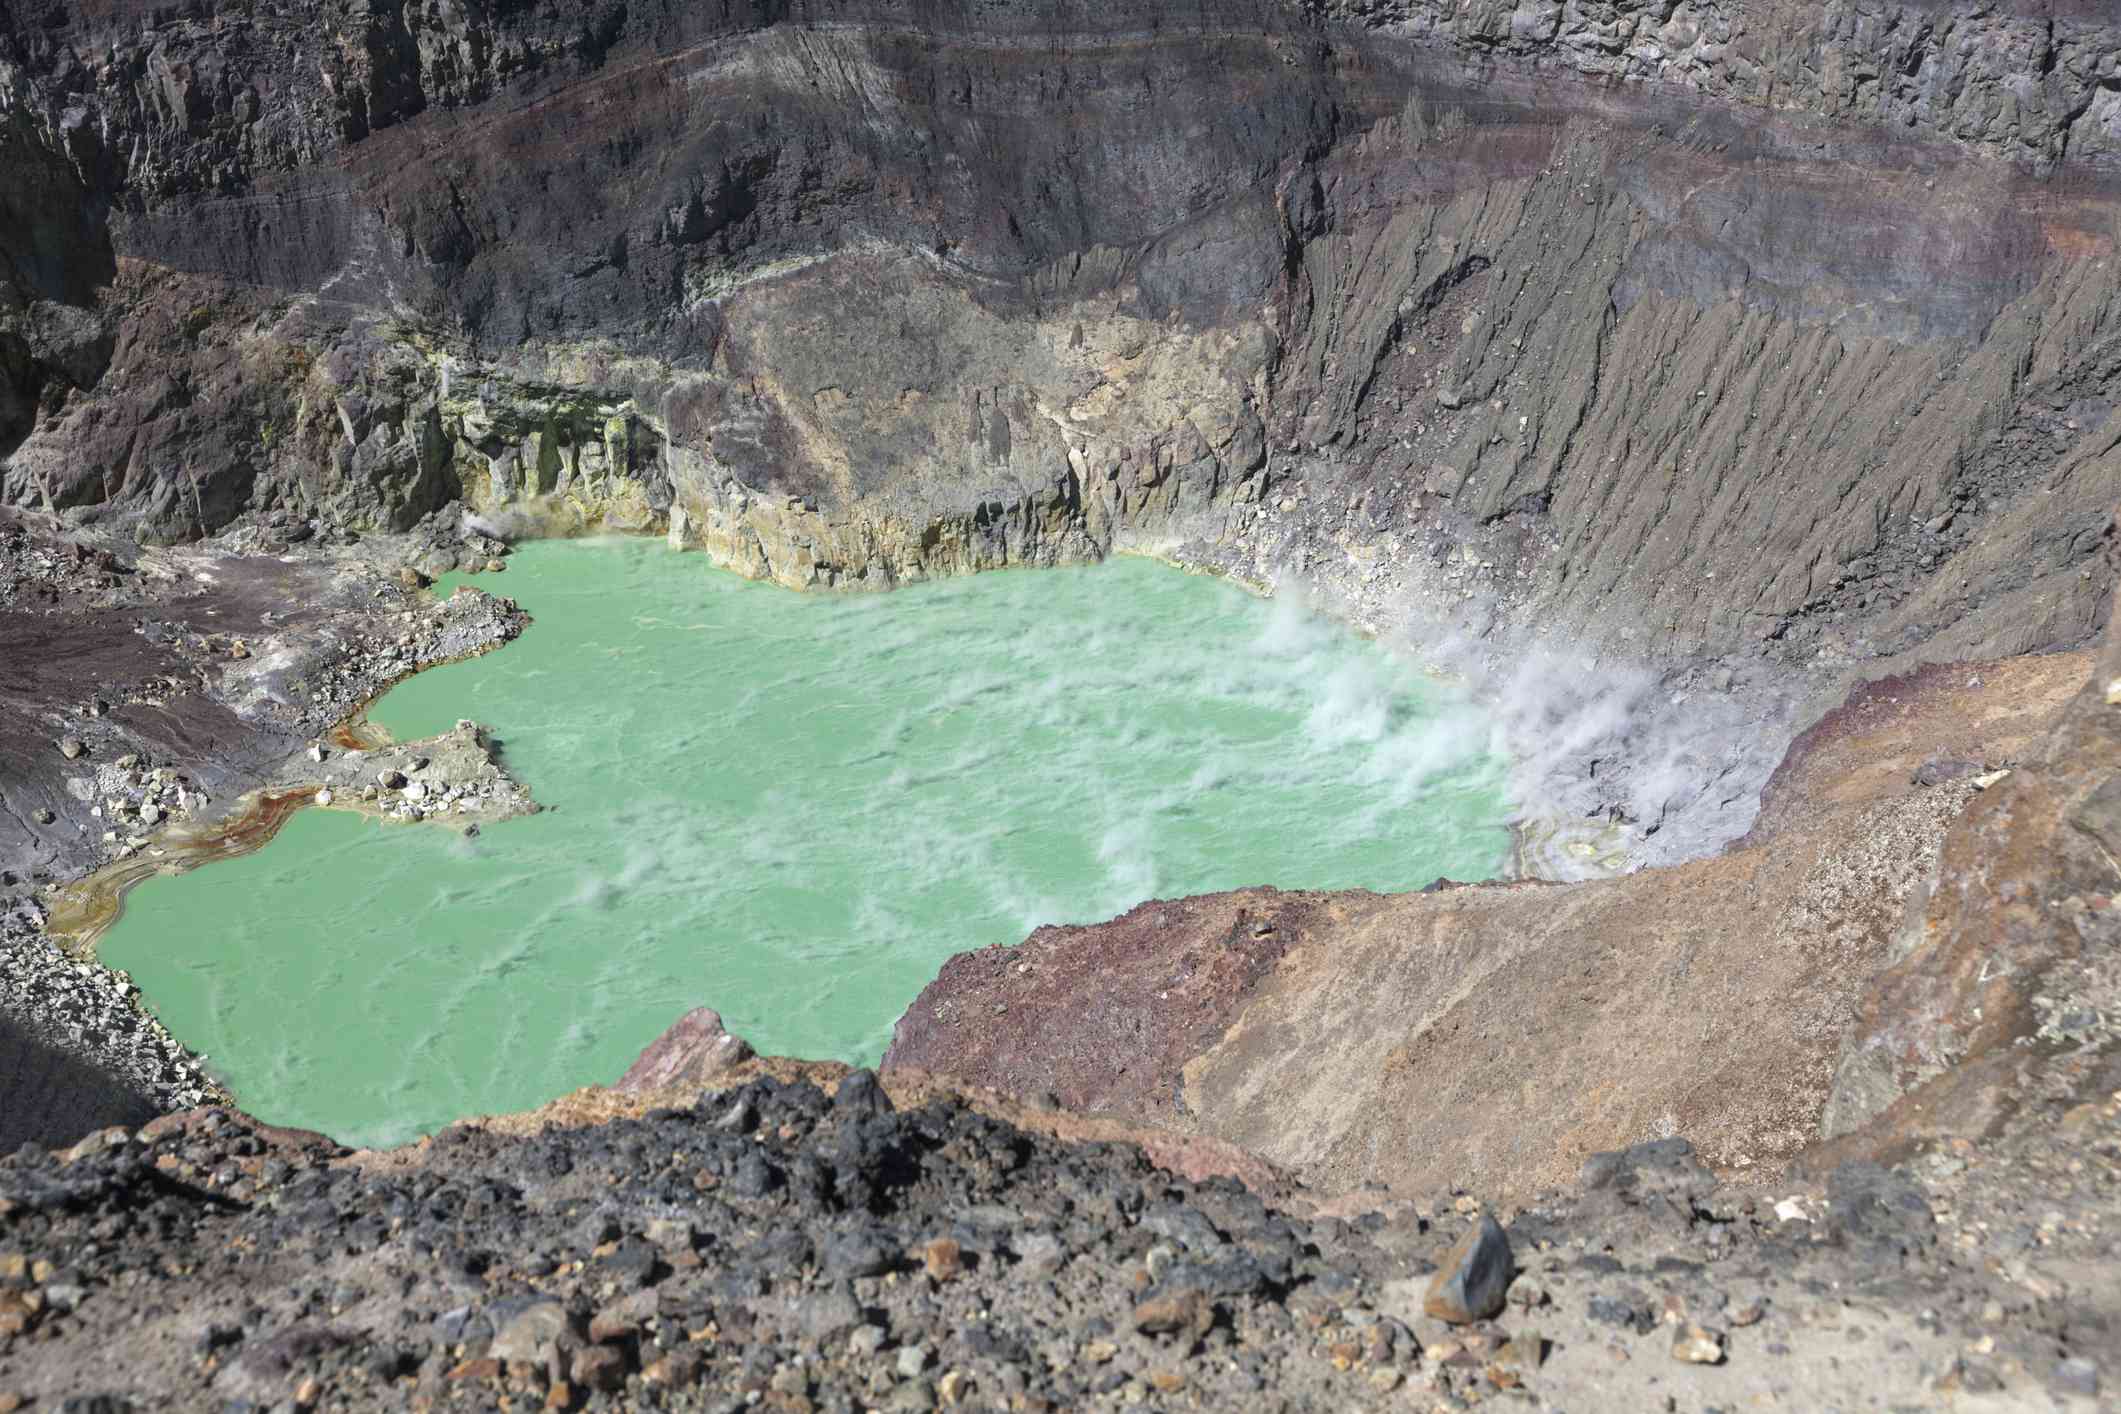 vista aérea de luguna ilamatepec, piscina de agua turquesa dentro de un cráter rocoso